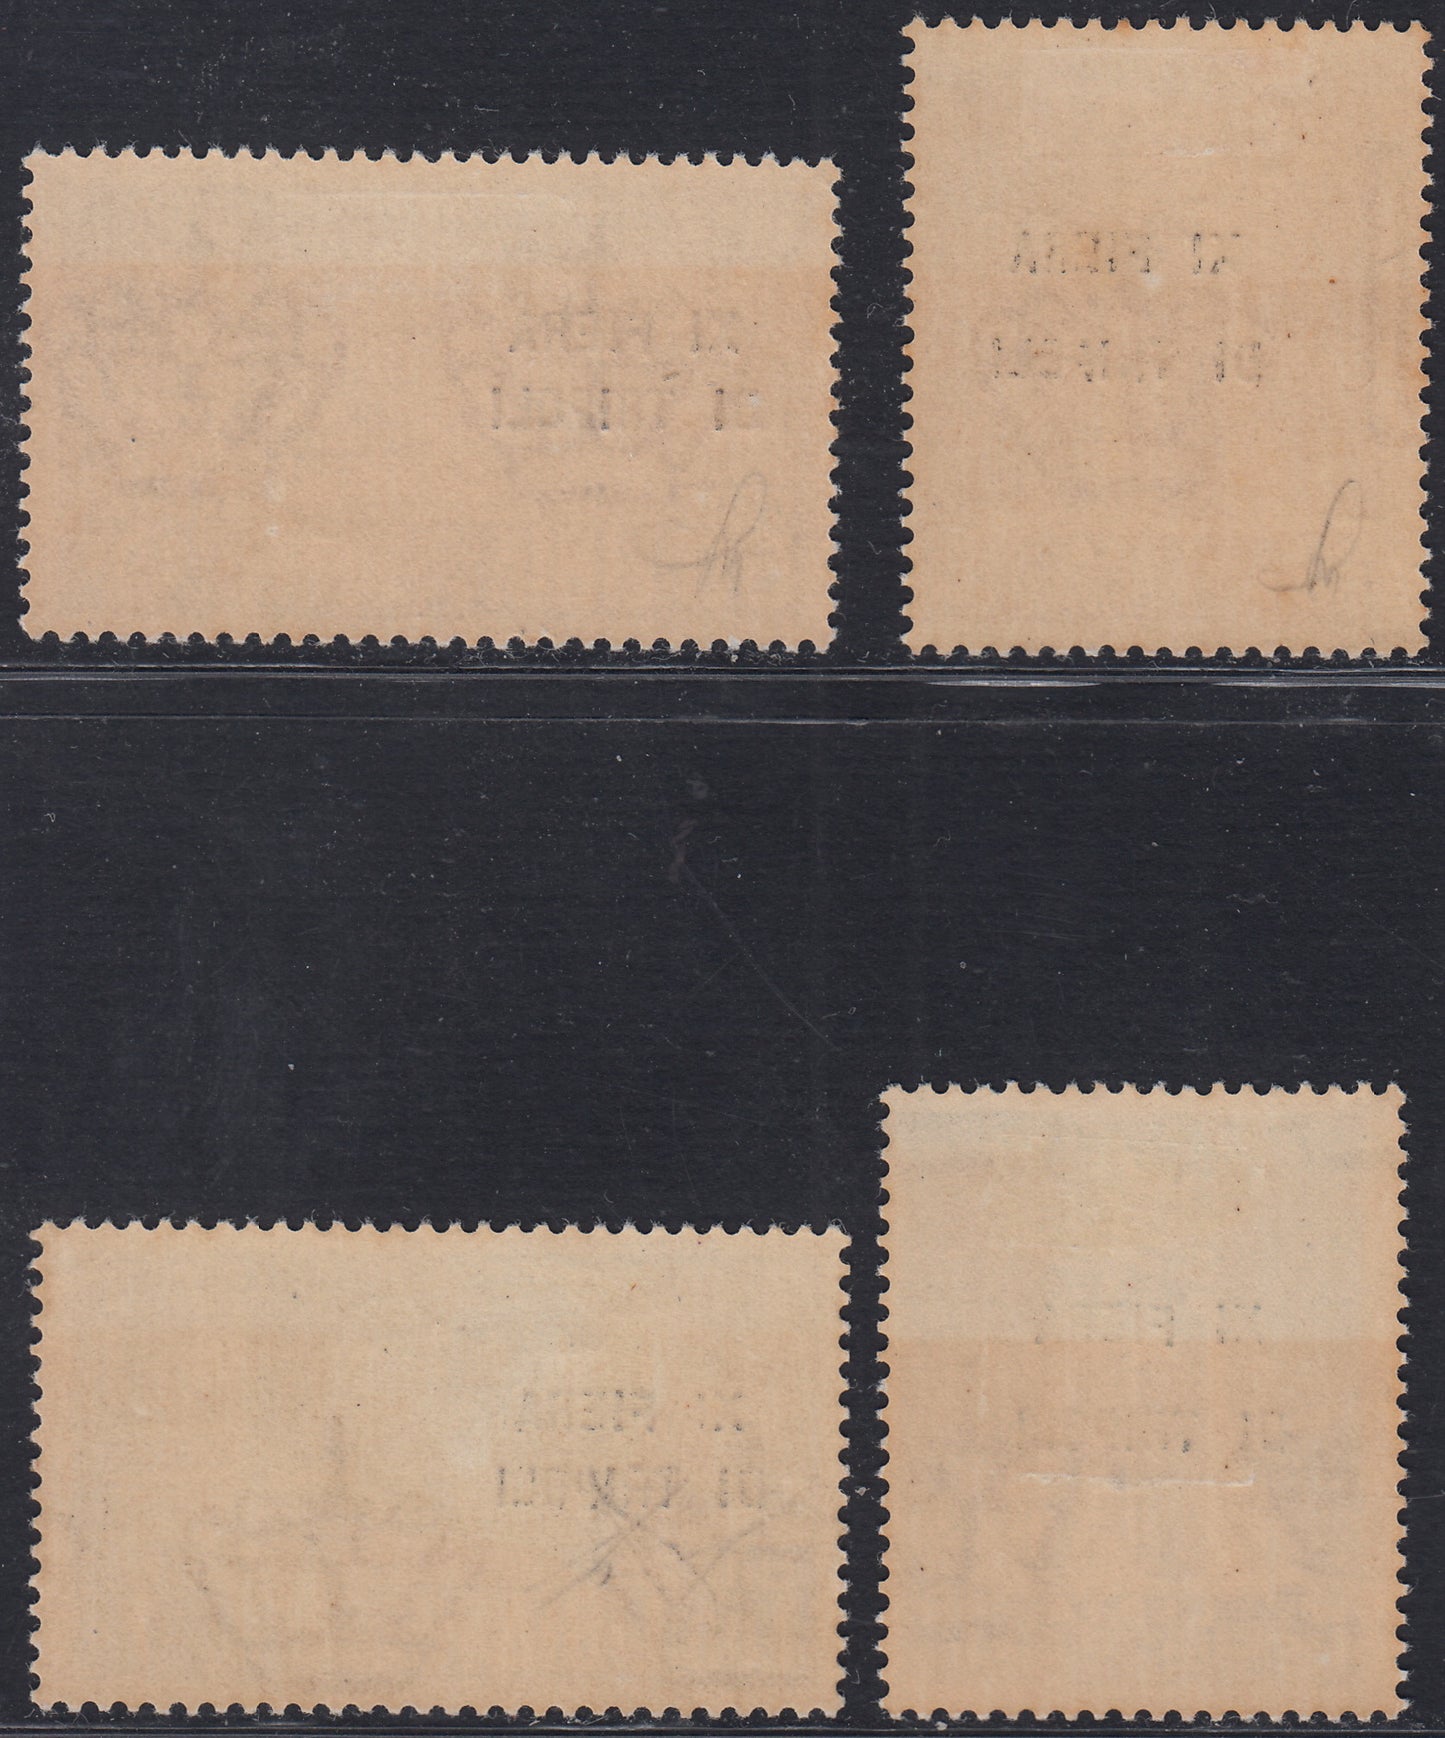 Libia17 - 1937 - XIa fiera di Tripoli, francobolli della Strada Litoranea soprastampati, nuovi con gomma originale (142/143 + A32/33).